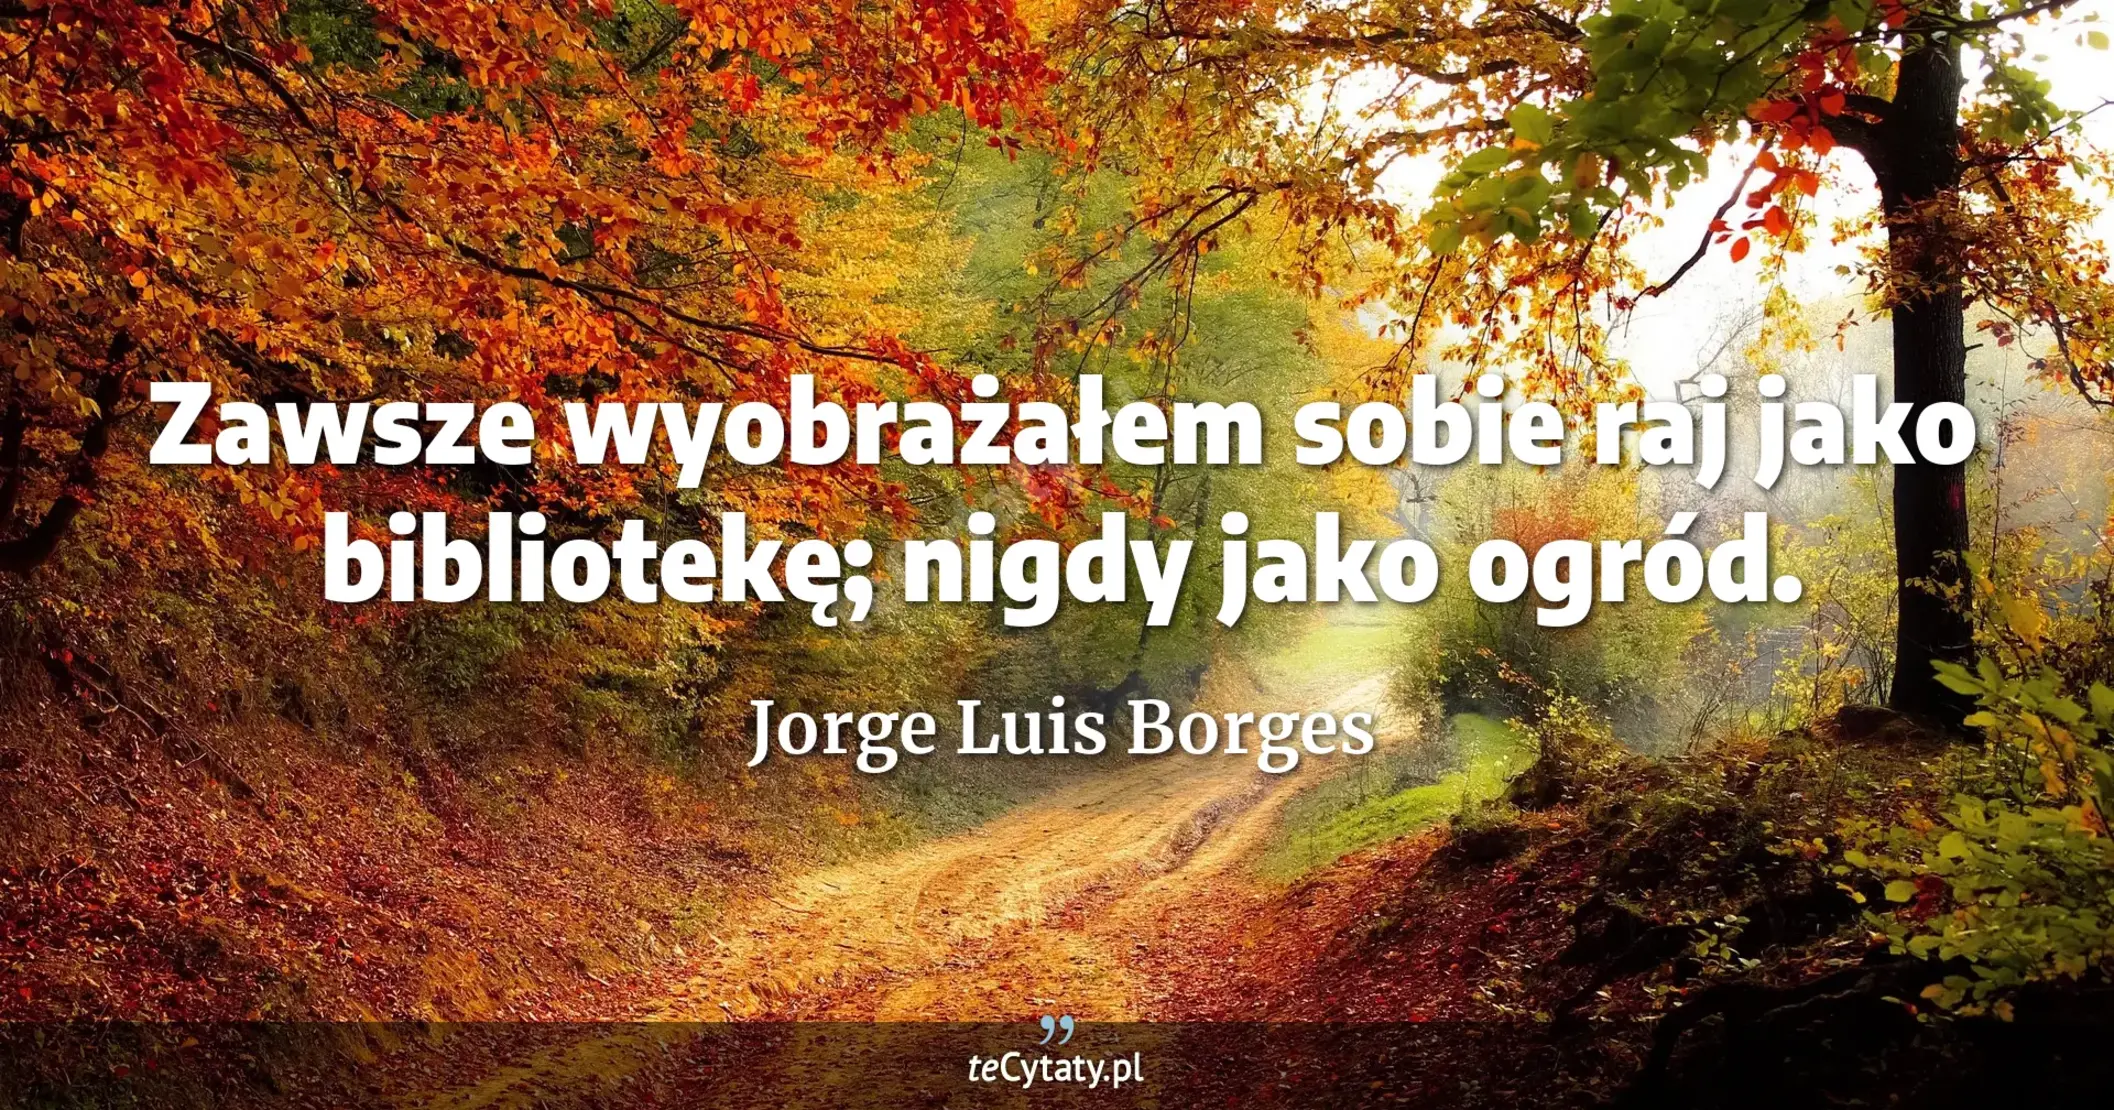 Zawsze wyobrażałem sobie raj jako bibliotekę; nigdy jako ogród. - Jorge Luis Borges